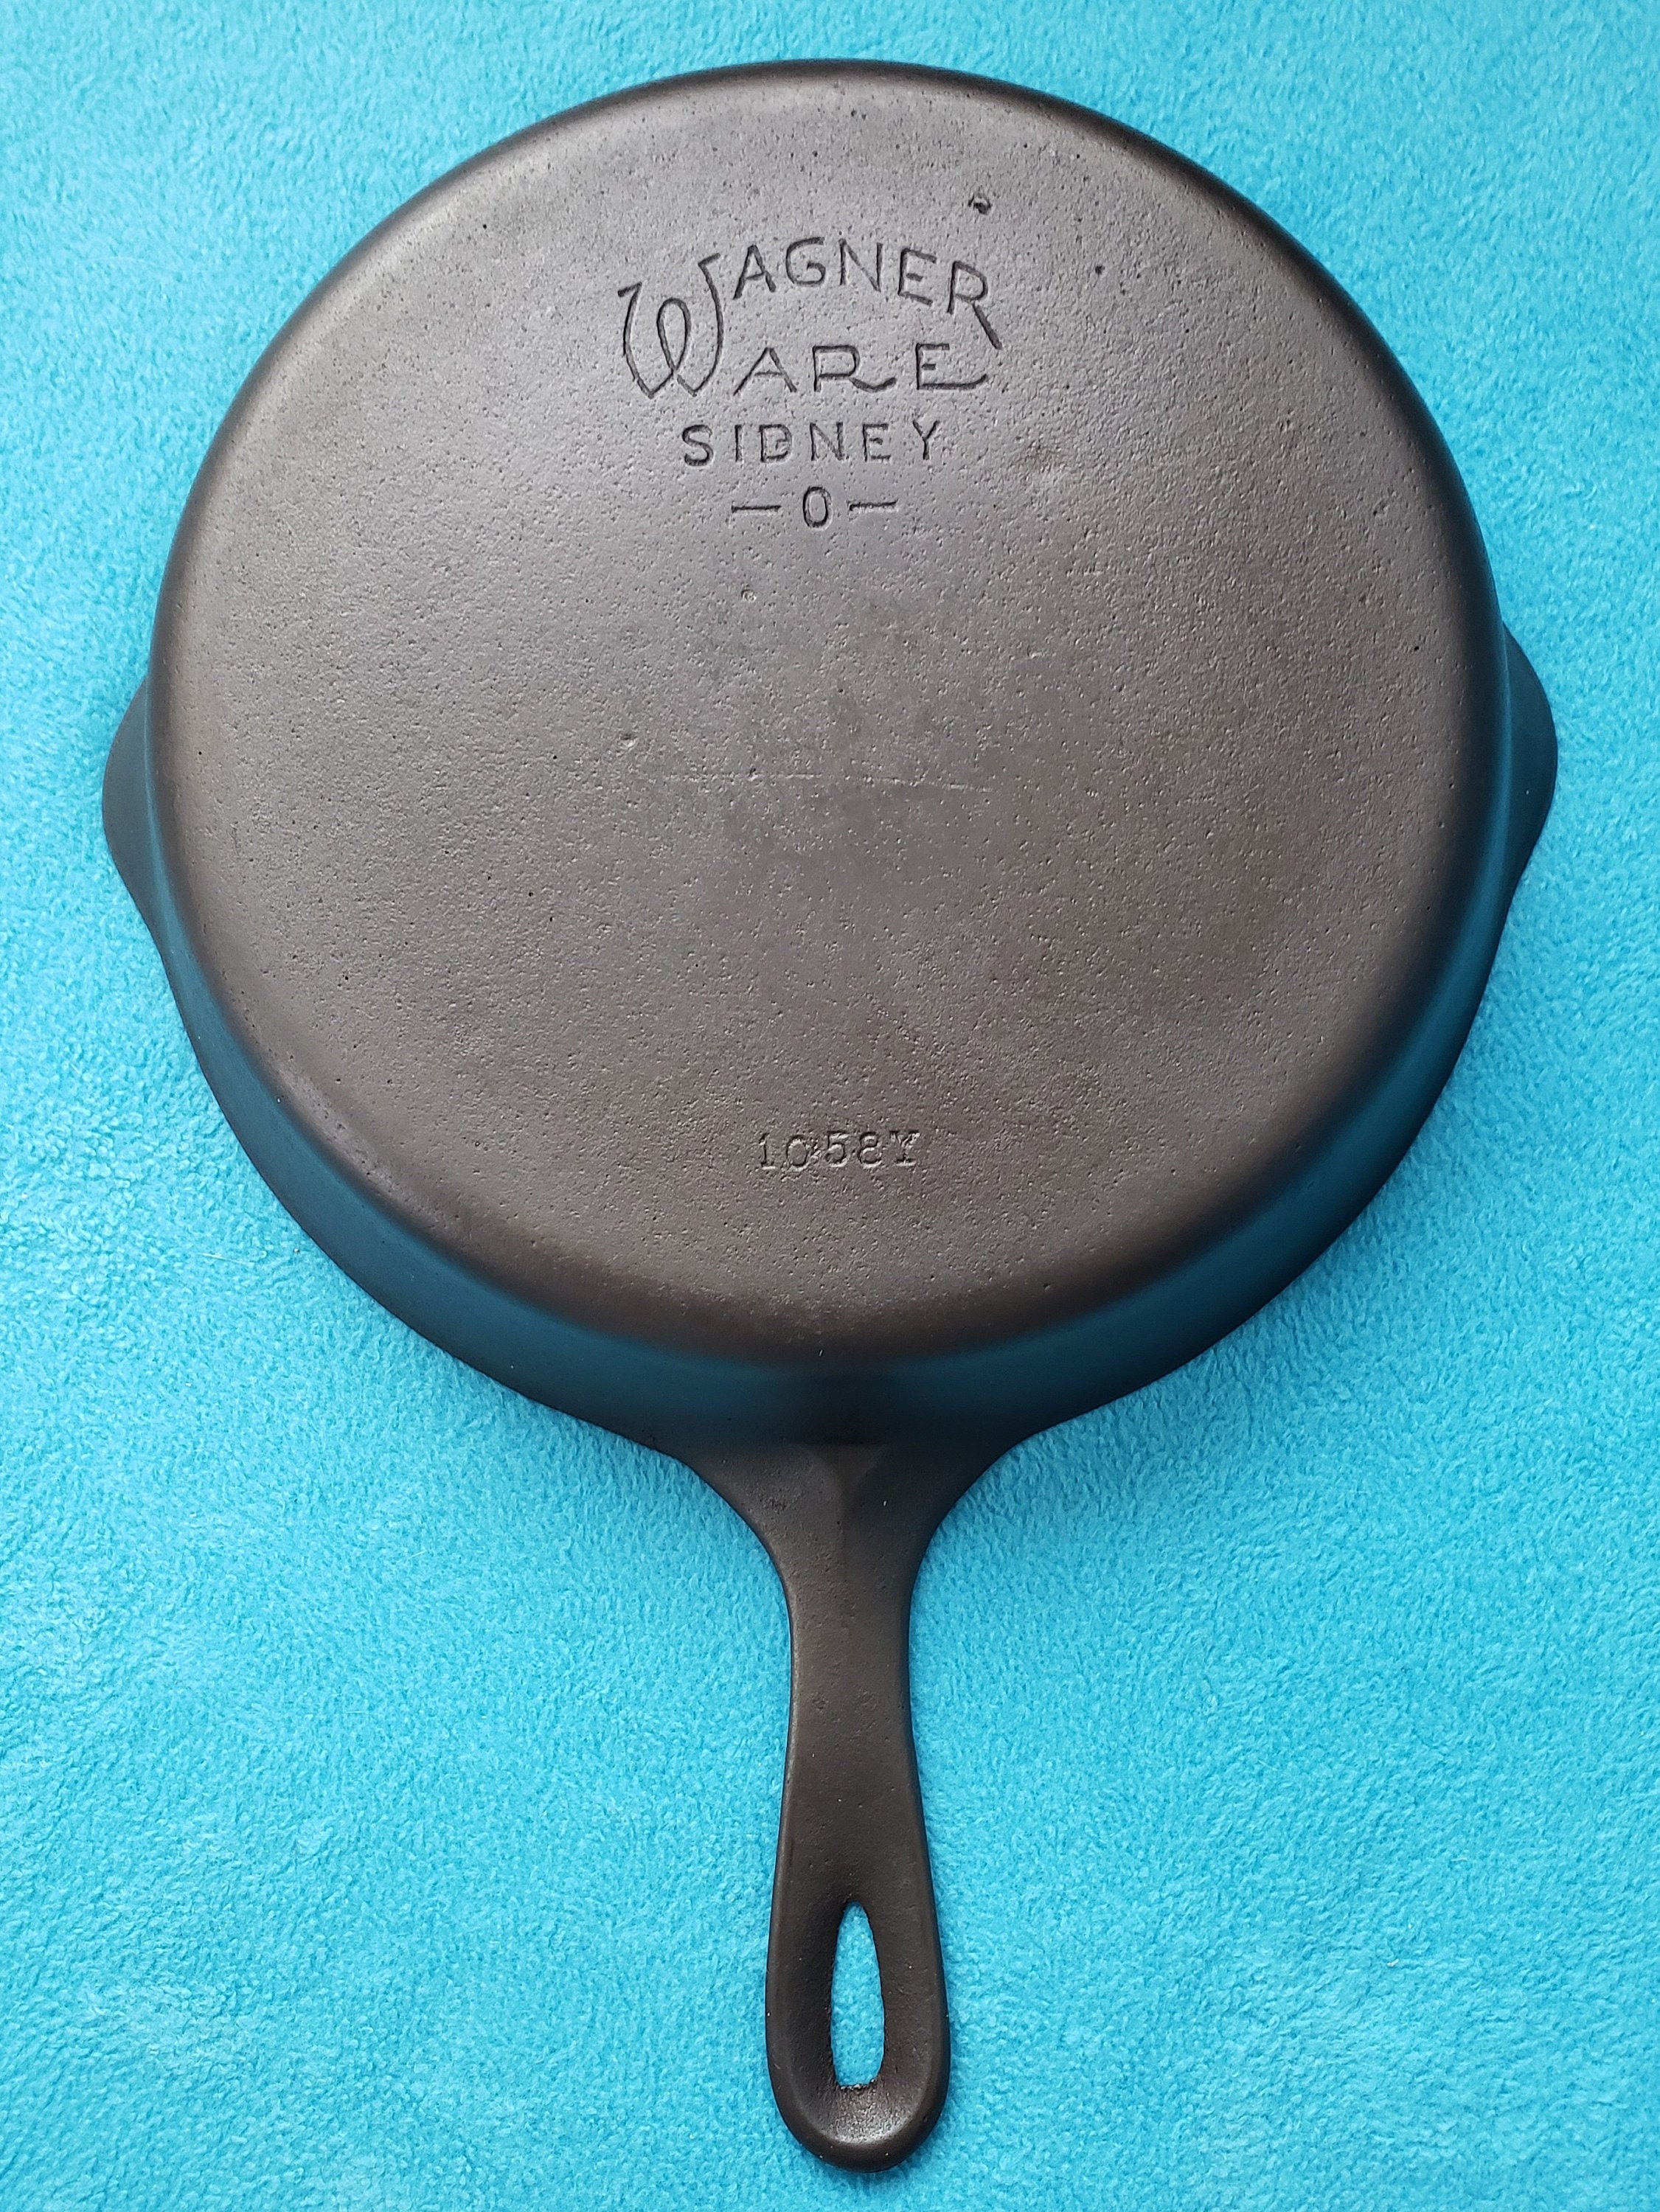 Vintage #8 Wagner Ware Sidney -O- Cast Iron Skillet 1058I Large 10 Frying  Pan